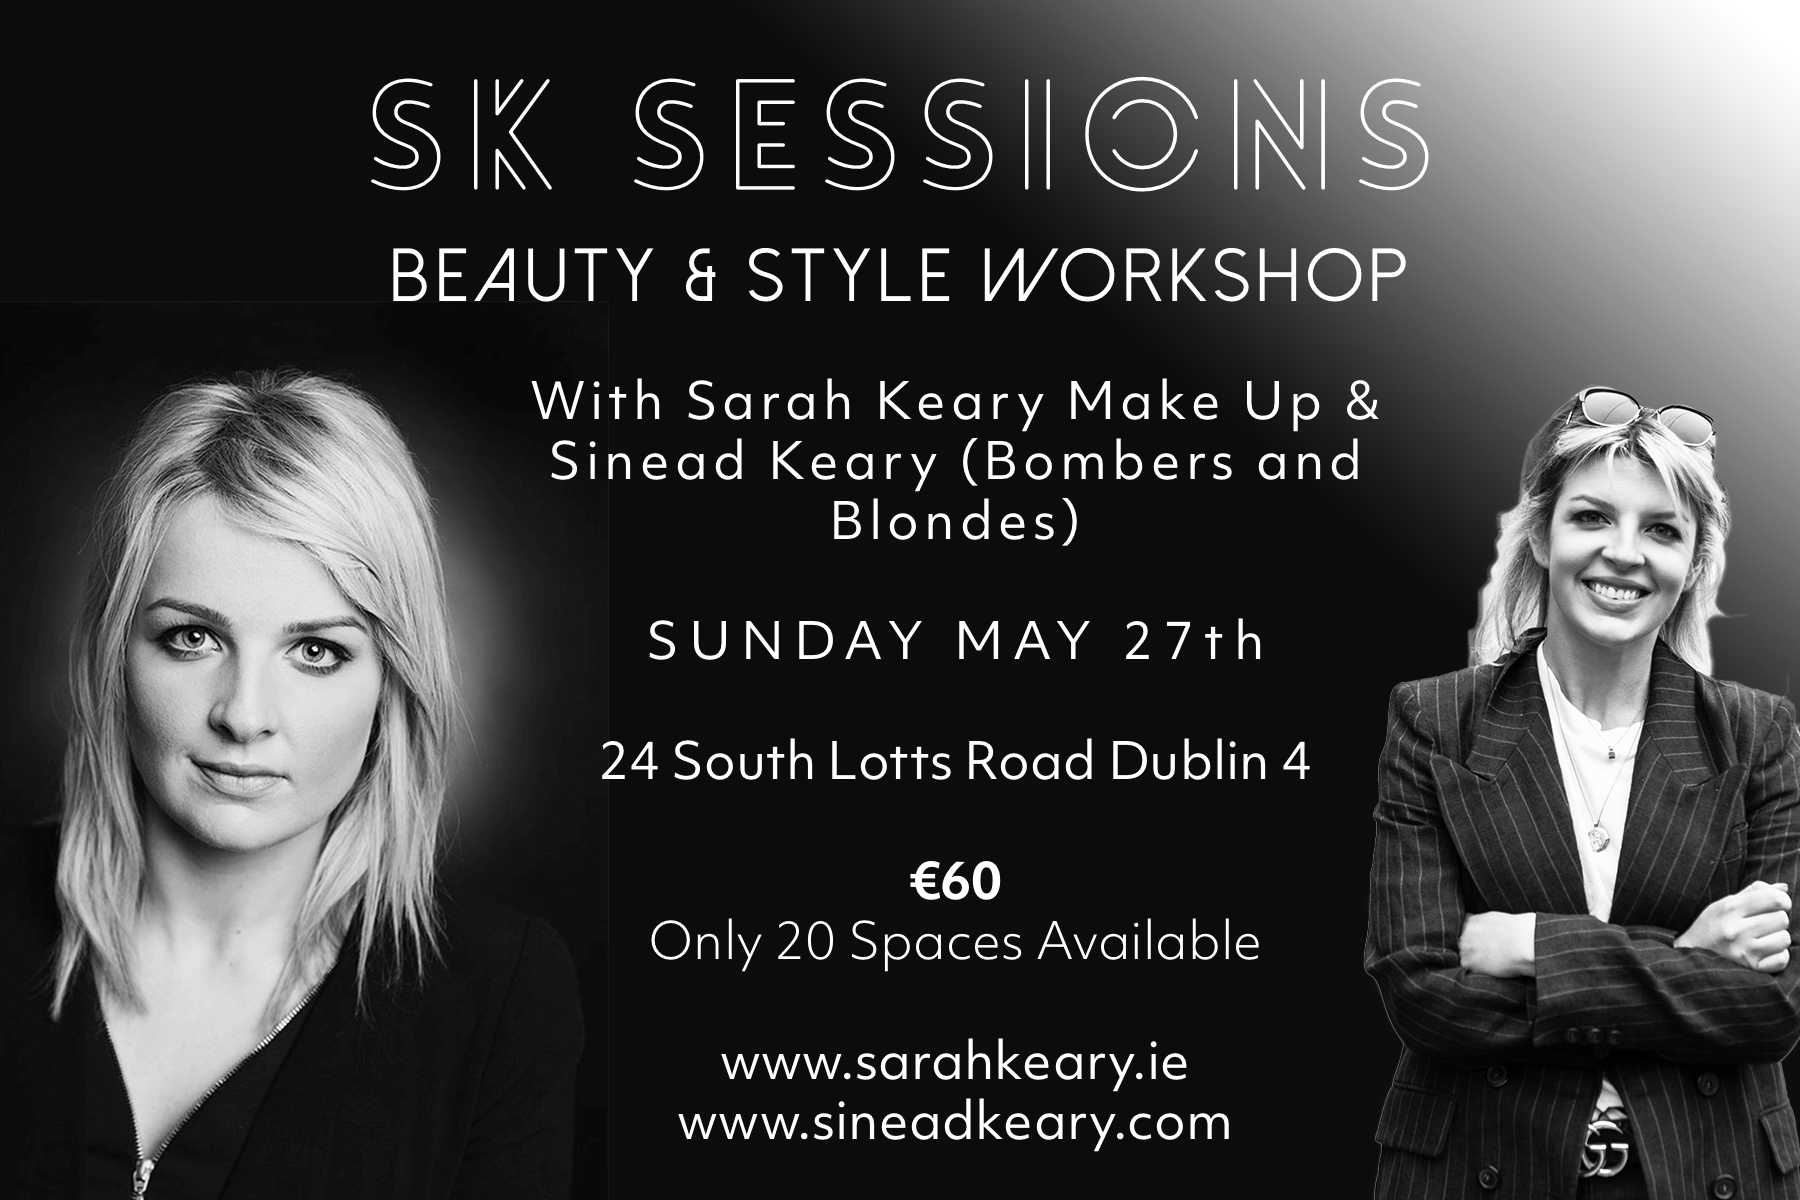 Beauty & Style Workshop Dublin – Sarah Keary